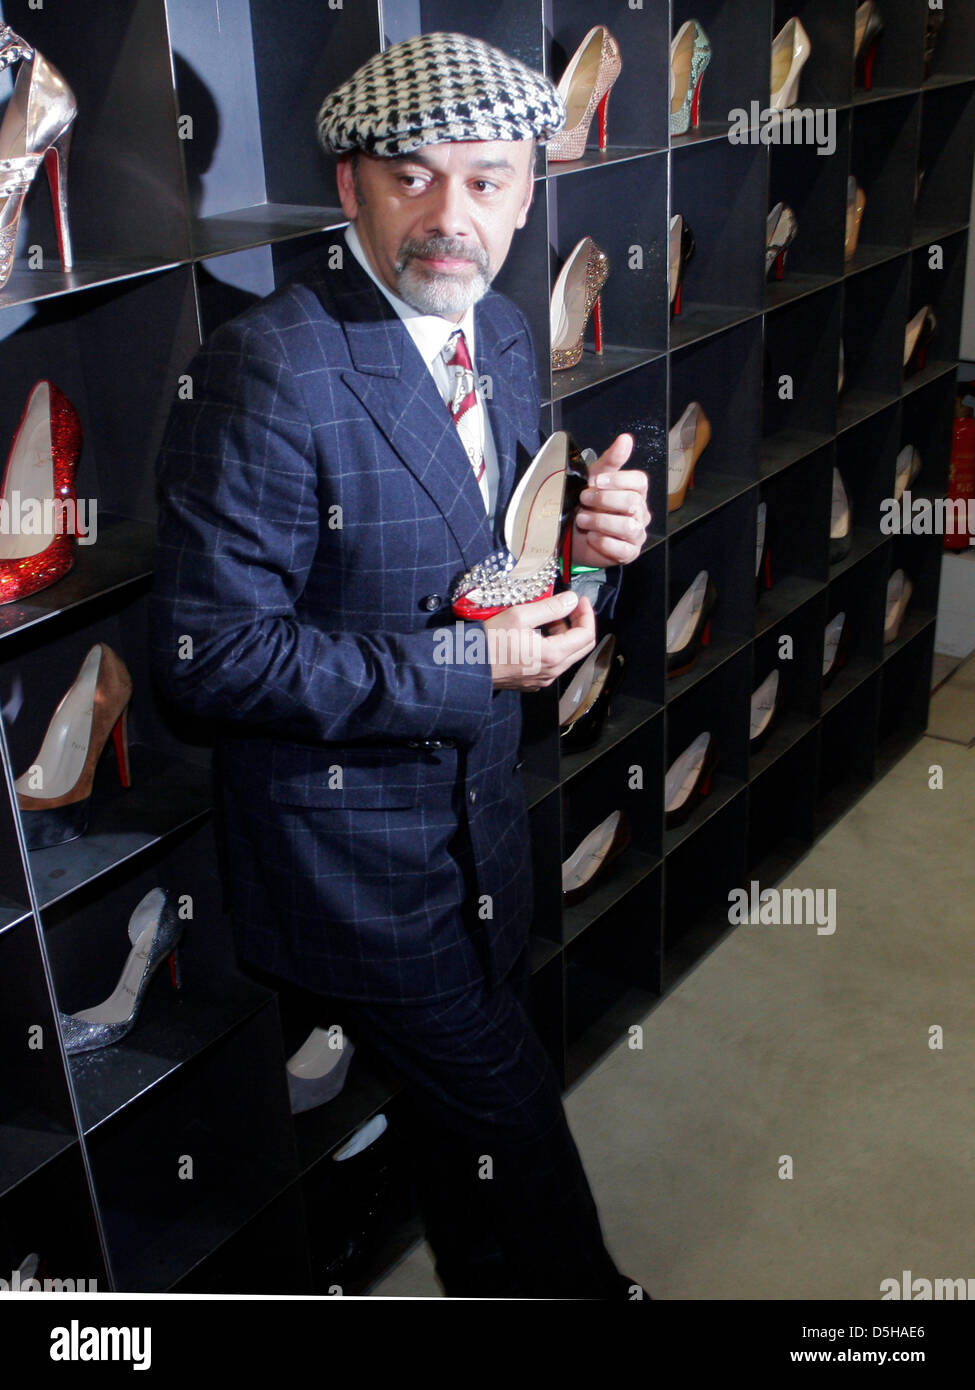 Diseñador de calzado francés Christian Louboutin asiste a la presentación  de sus zapatos en 'La Esquina' boutique de moda en Berlín, Alemania, 04 de  febrero de 2010. Foto: Xamax Fotografía de stock - Alamy